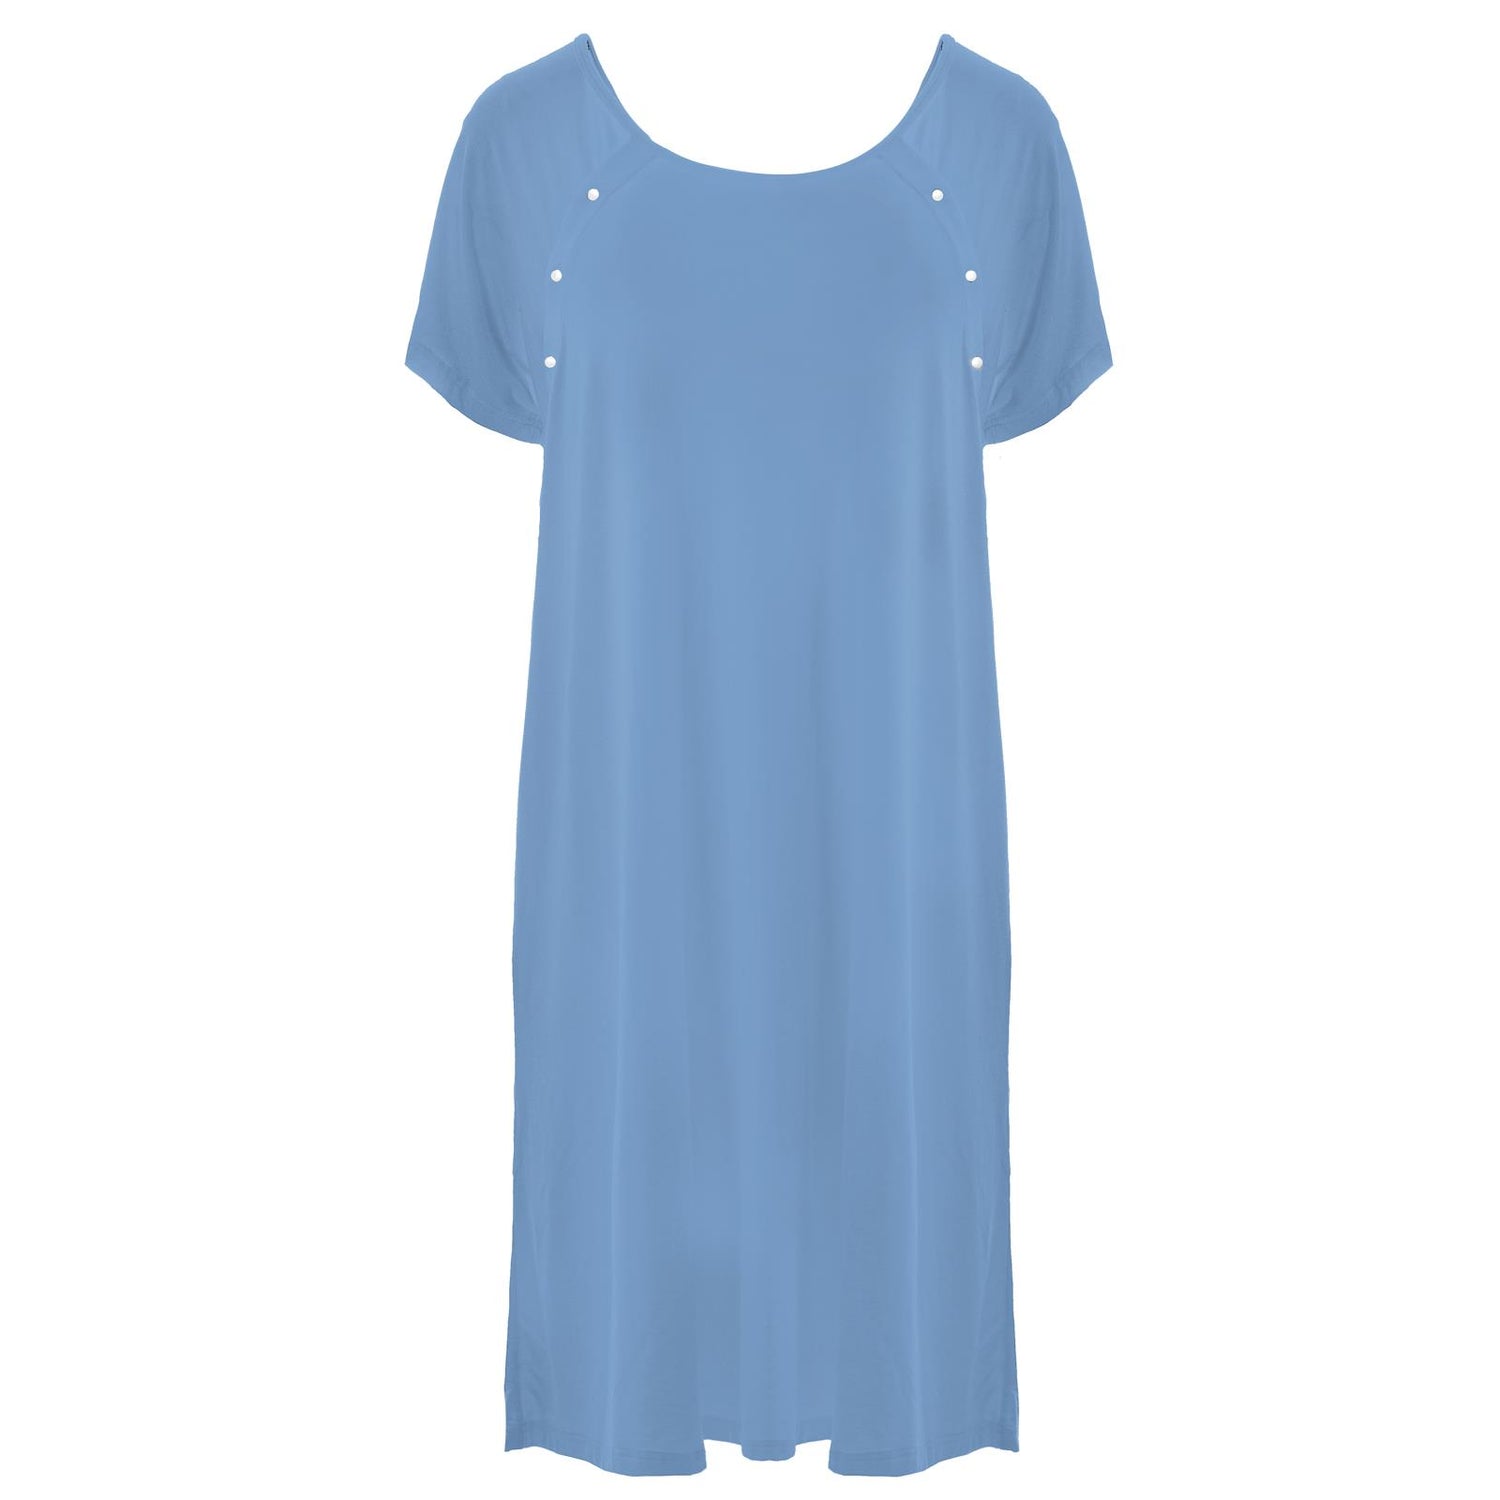 Women's Hospital Gown in Dream Blue